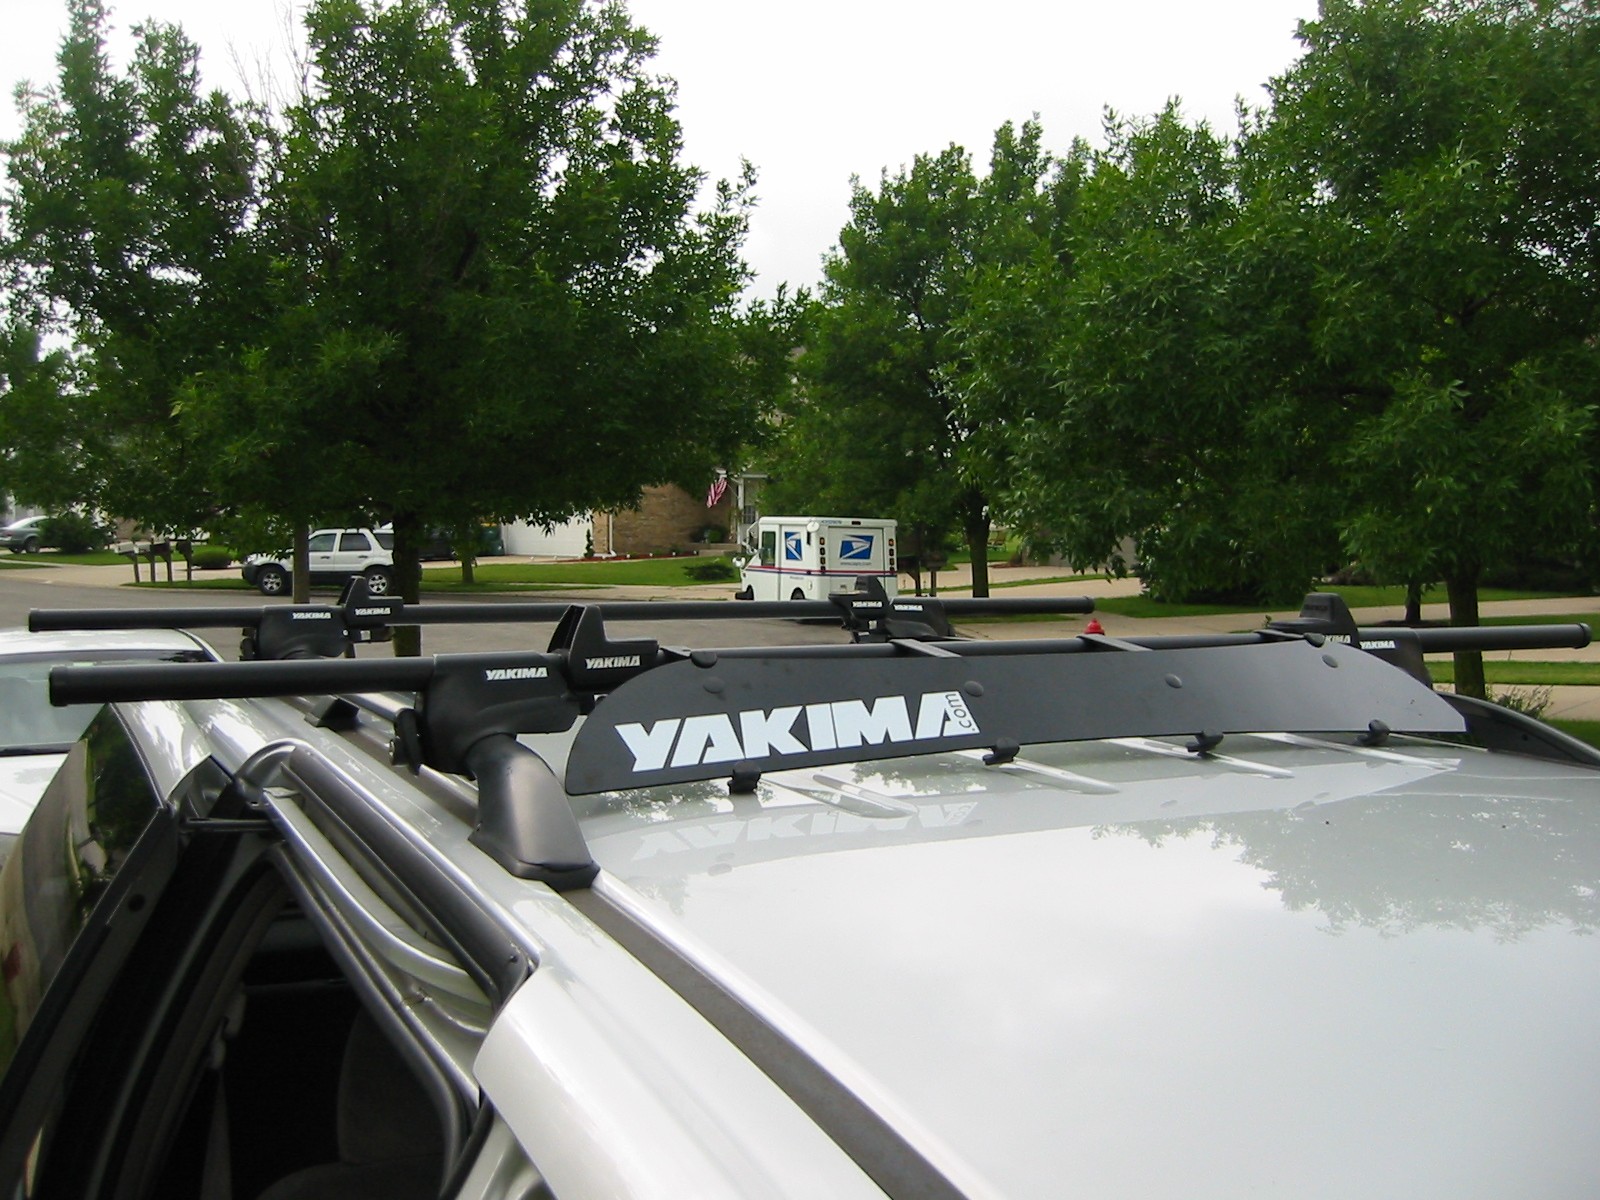 A Yakima roof rack